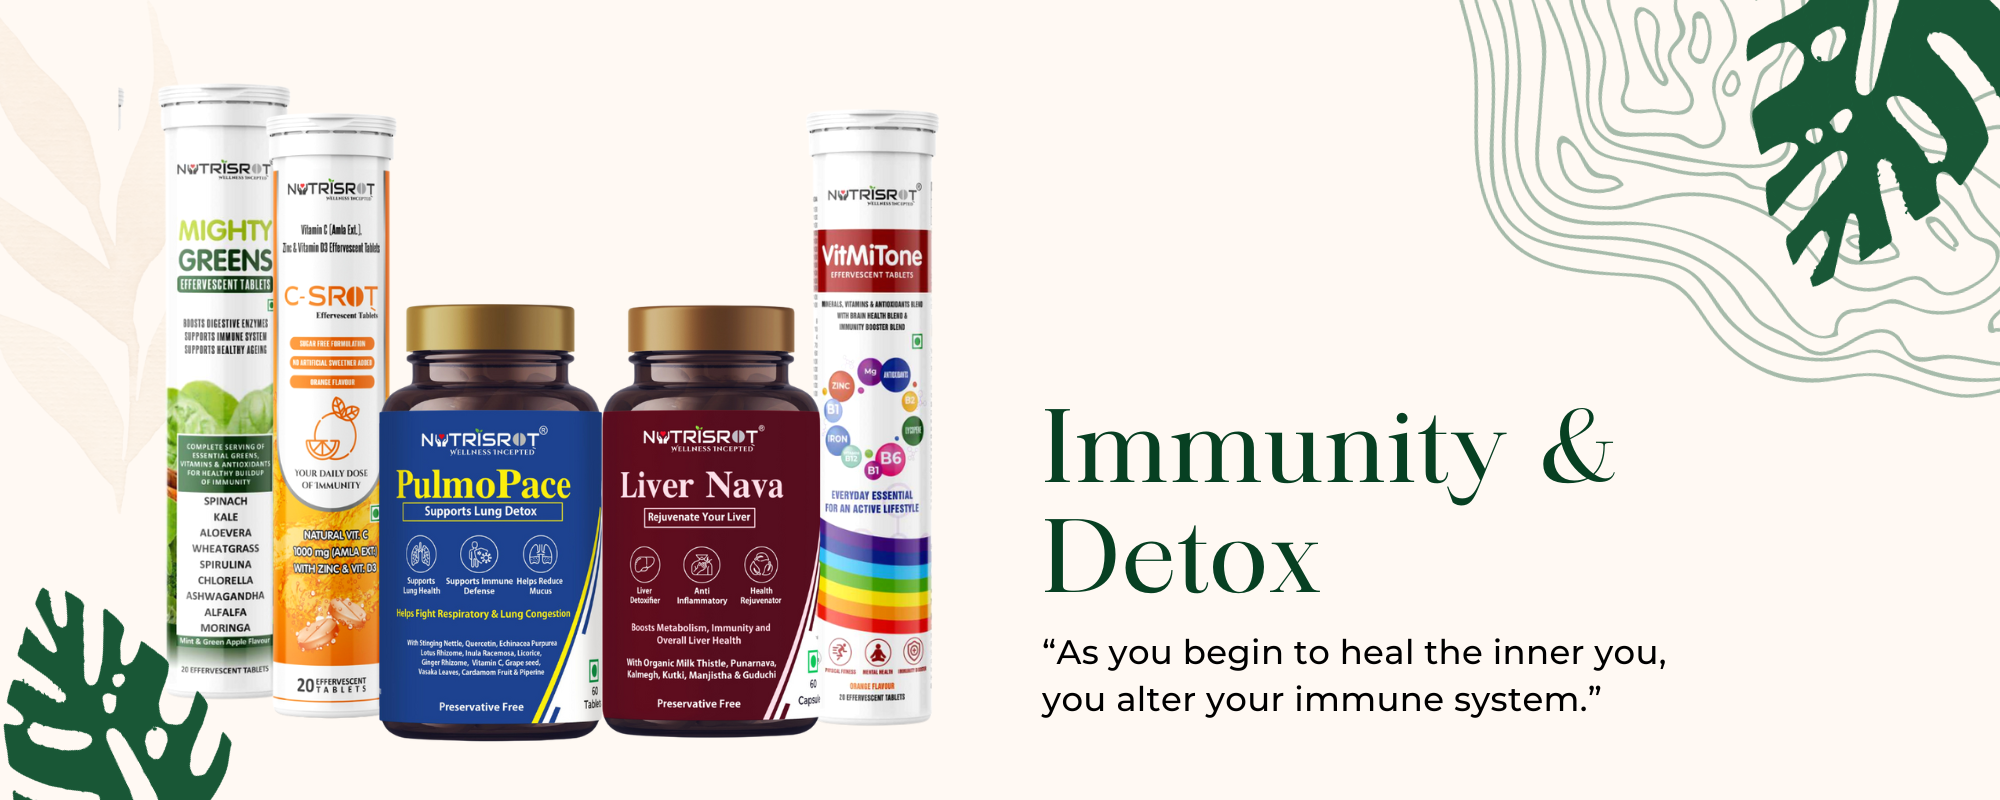 Immunity & Detox